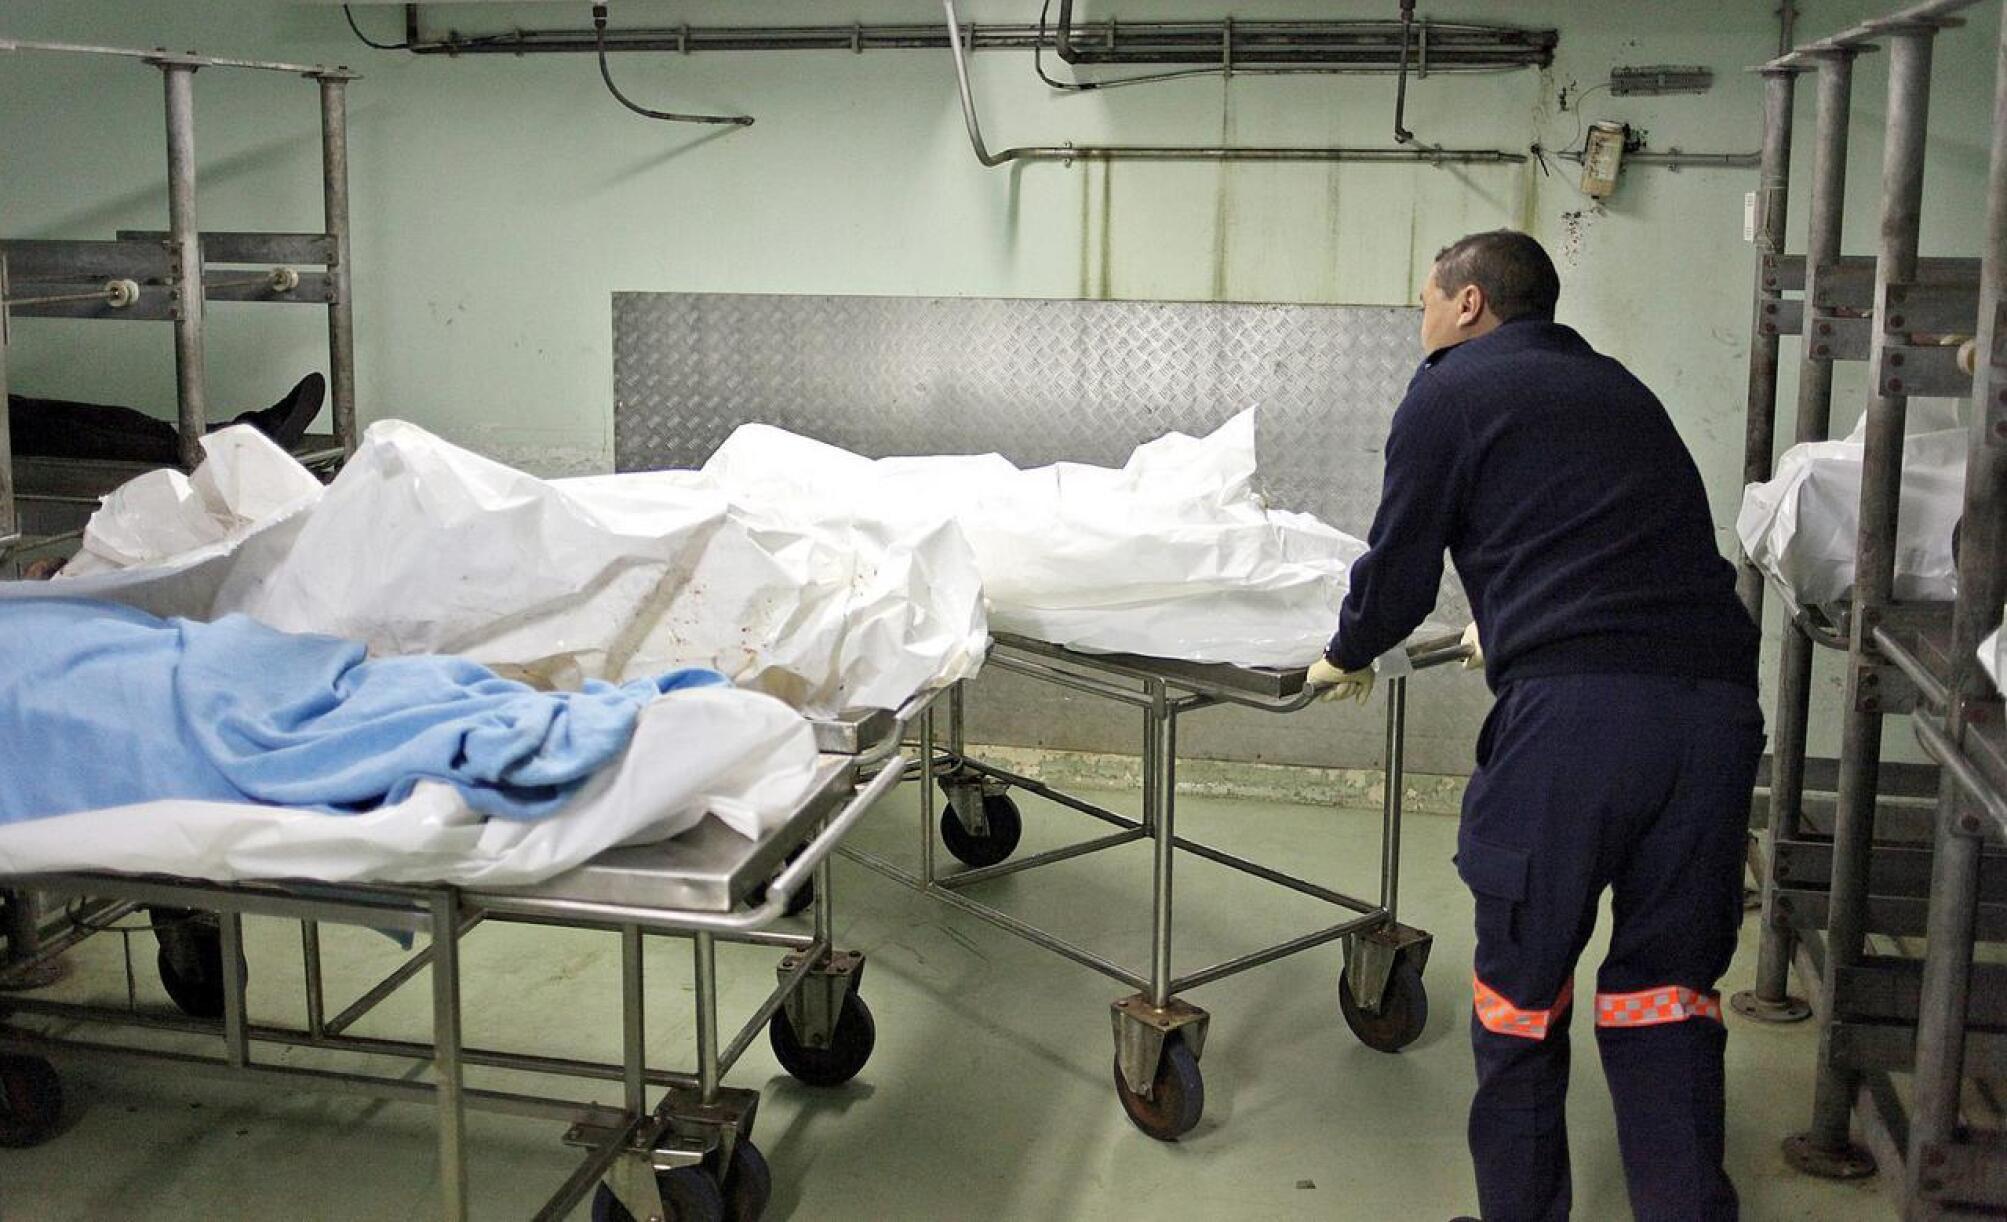 A forensic pathology employee pushing bodies 